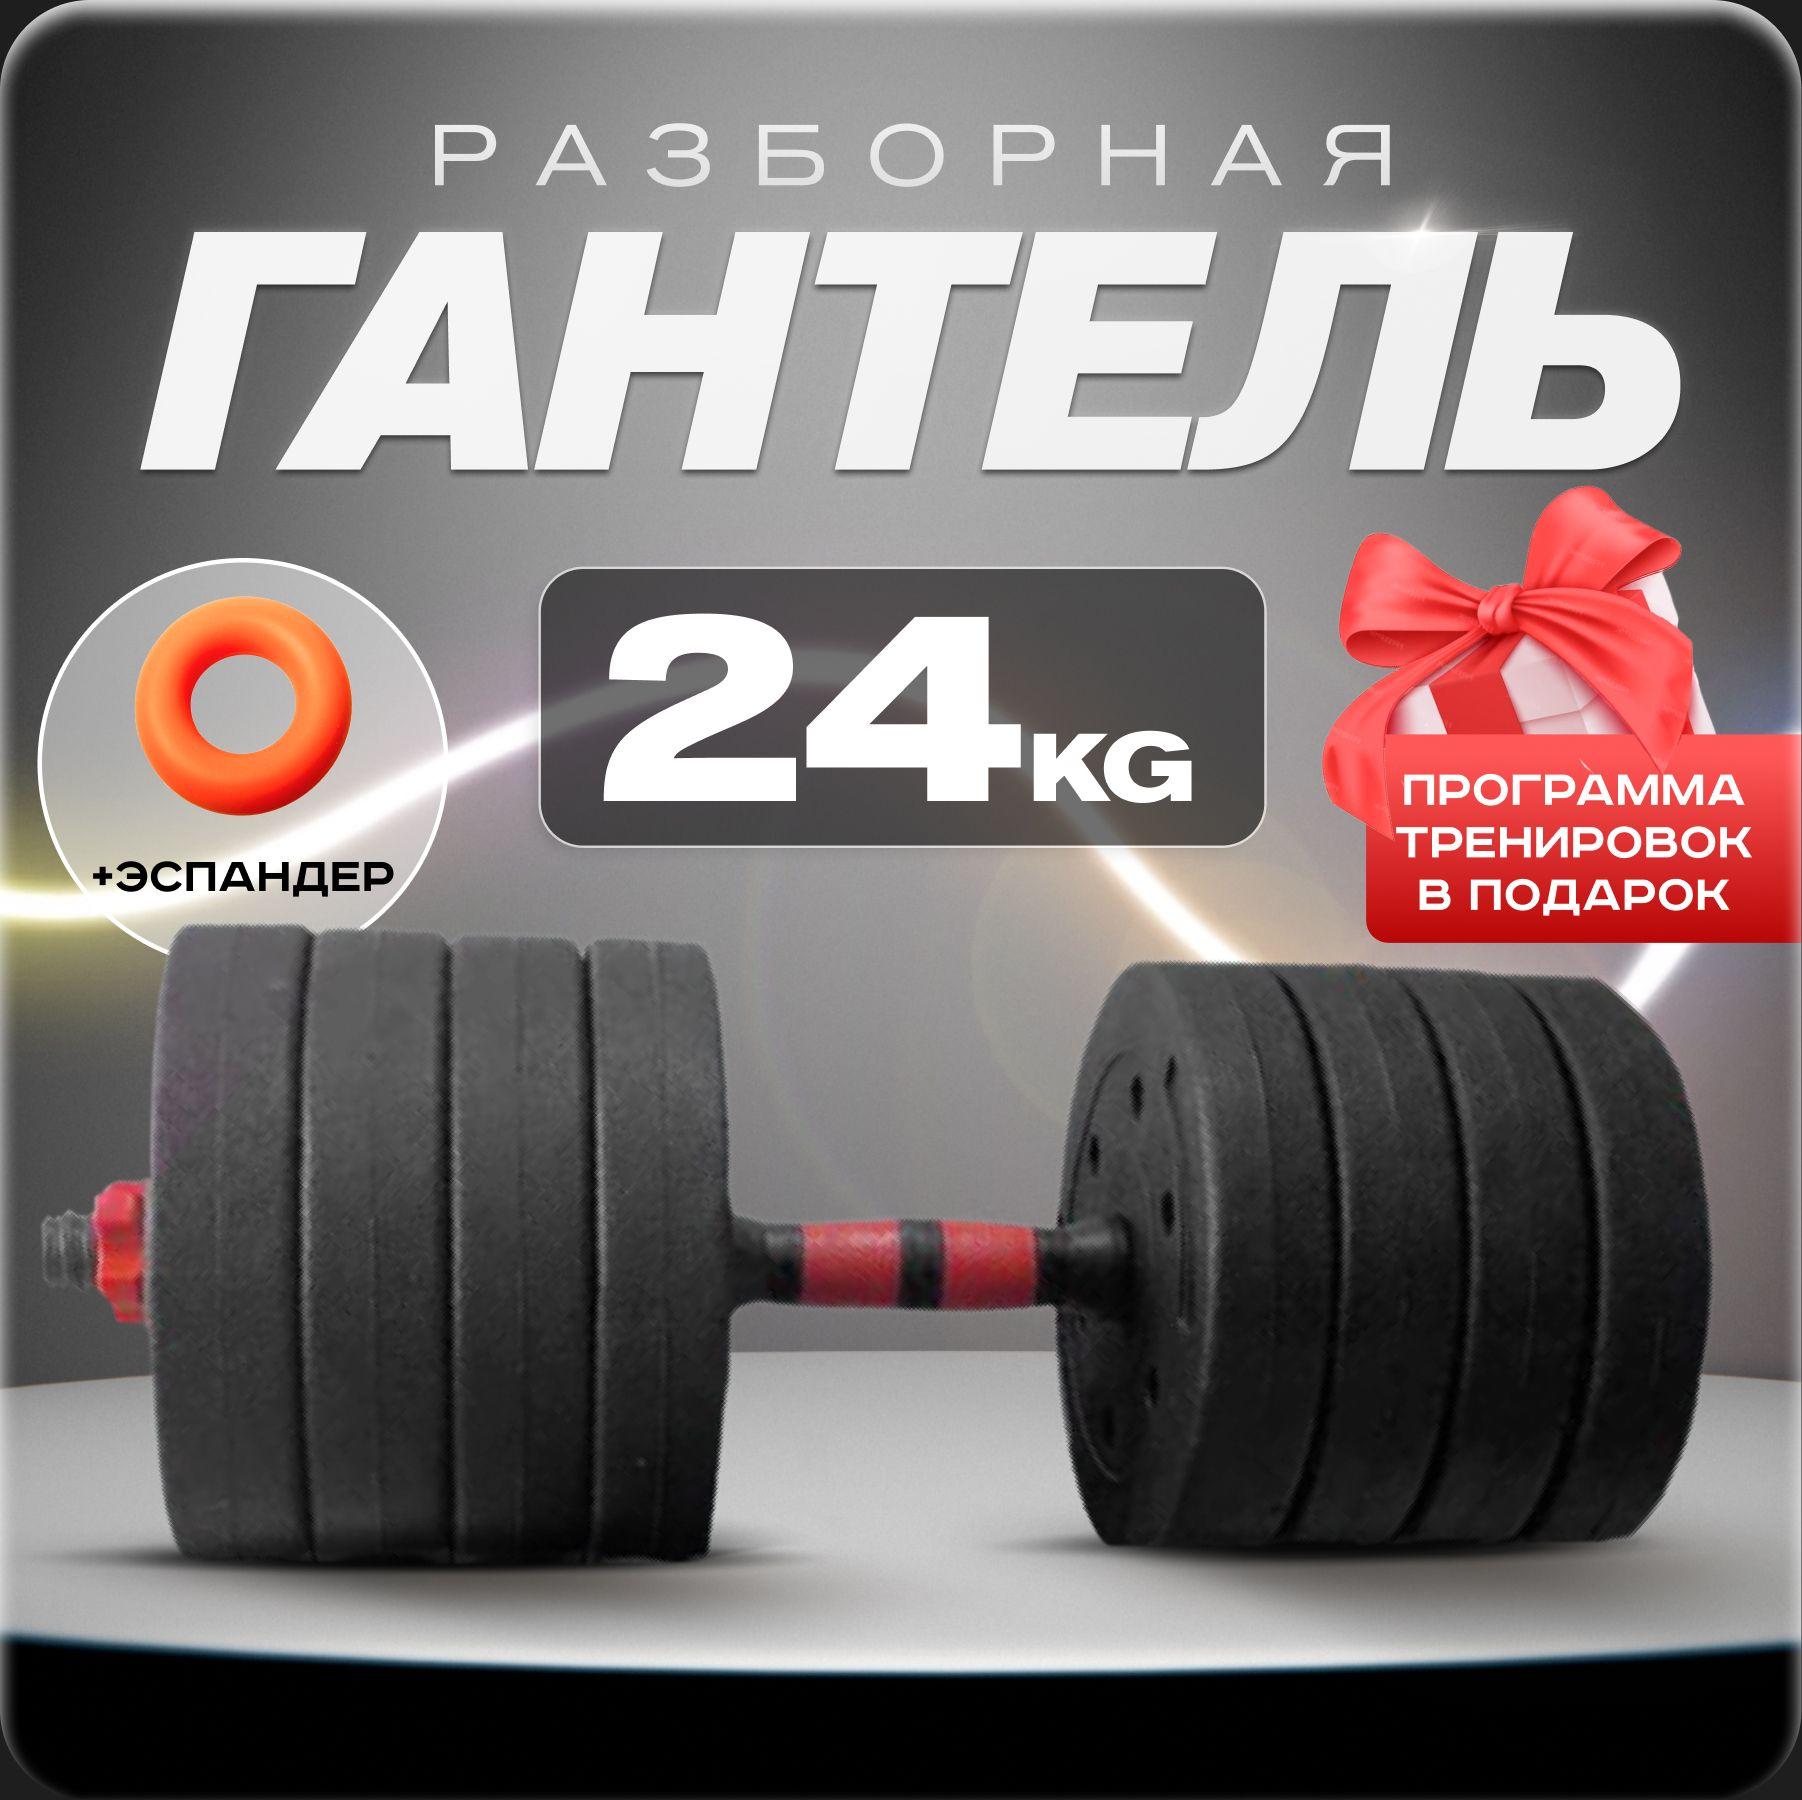 Гантель разборная 24 кг для фитнеса 1 шт. Гантели - трансформер, черный, красный цвет, для тренировок